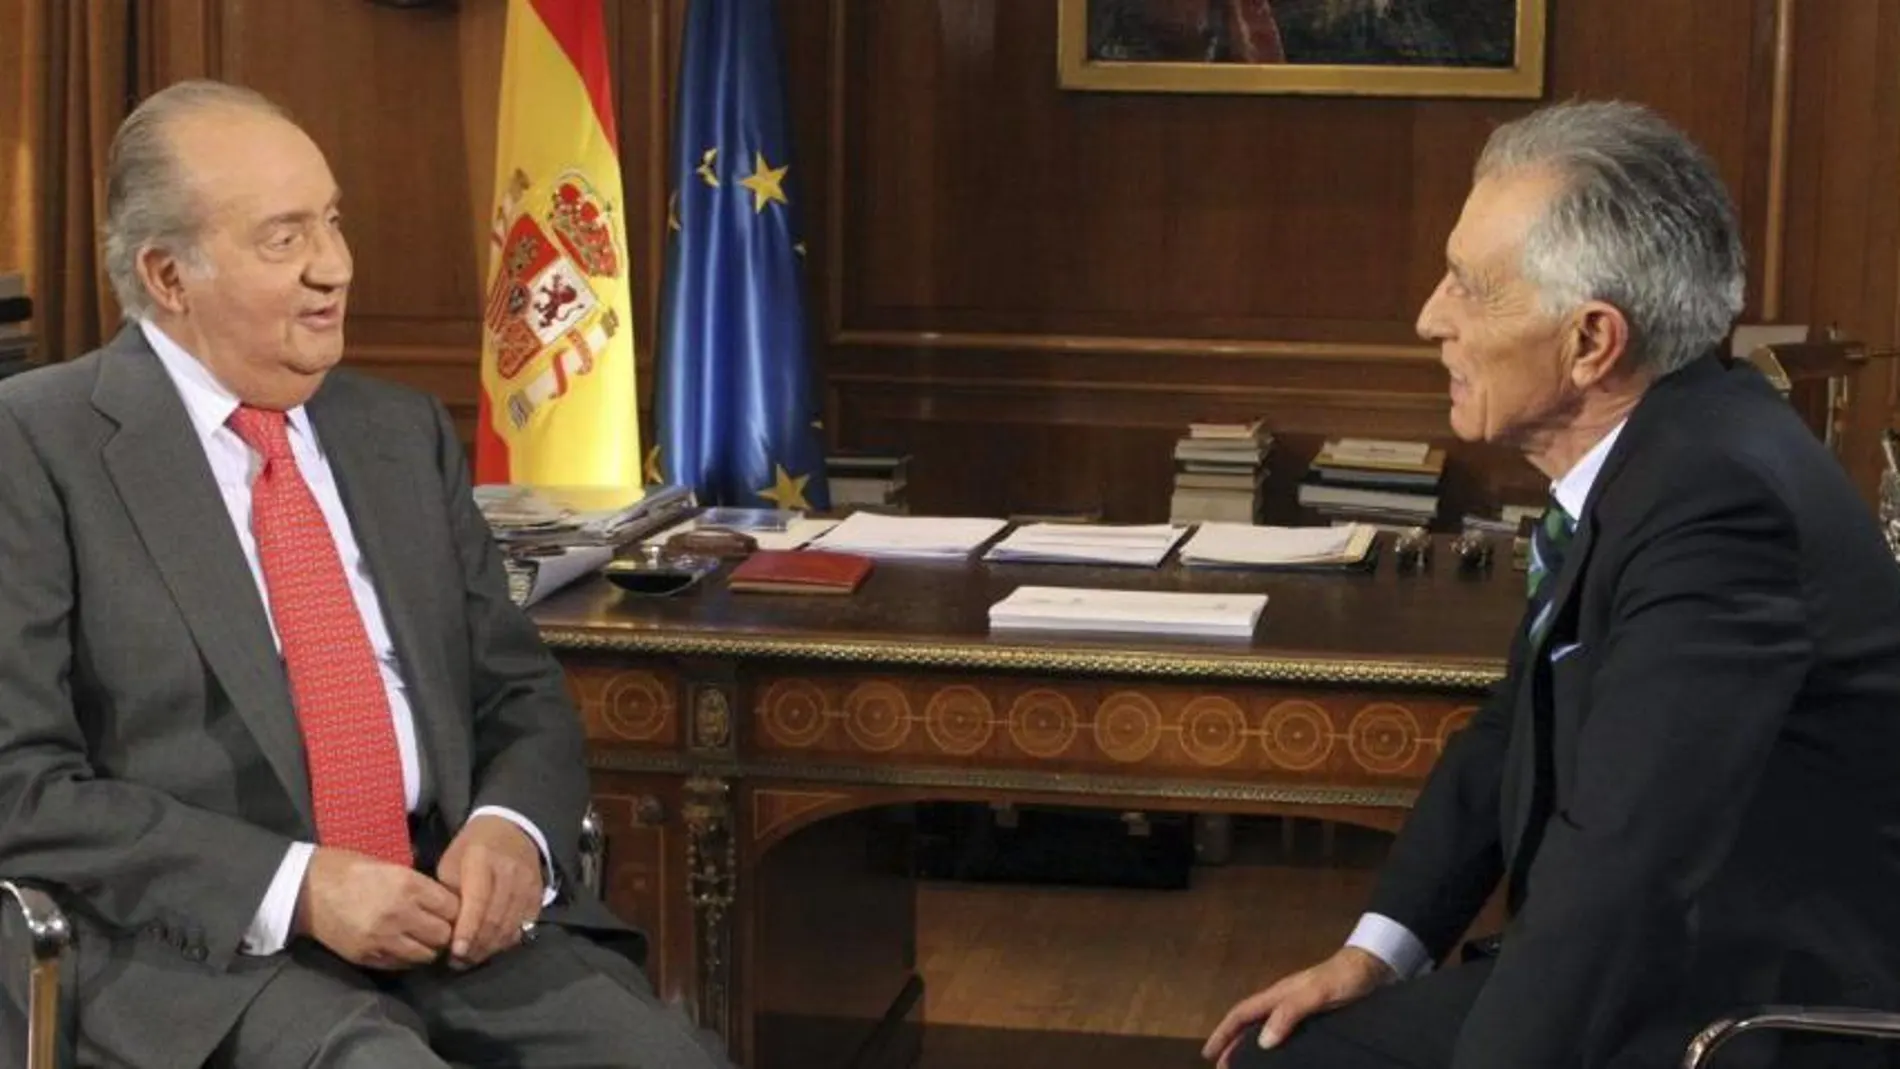 Fotografía facilitada por la Casa de SS.MM el Rey que muestra a don Juan Carlos siendo entrevistado por el veterano periodista Jesús Hermida, con motivo del 75 aniversario del Monarca